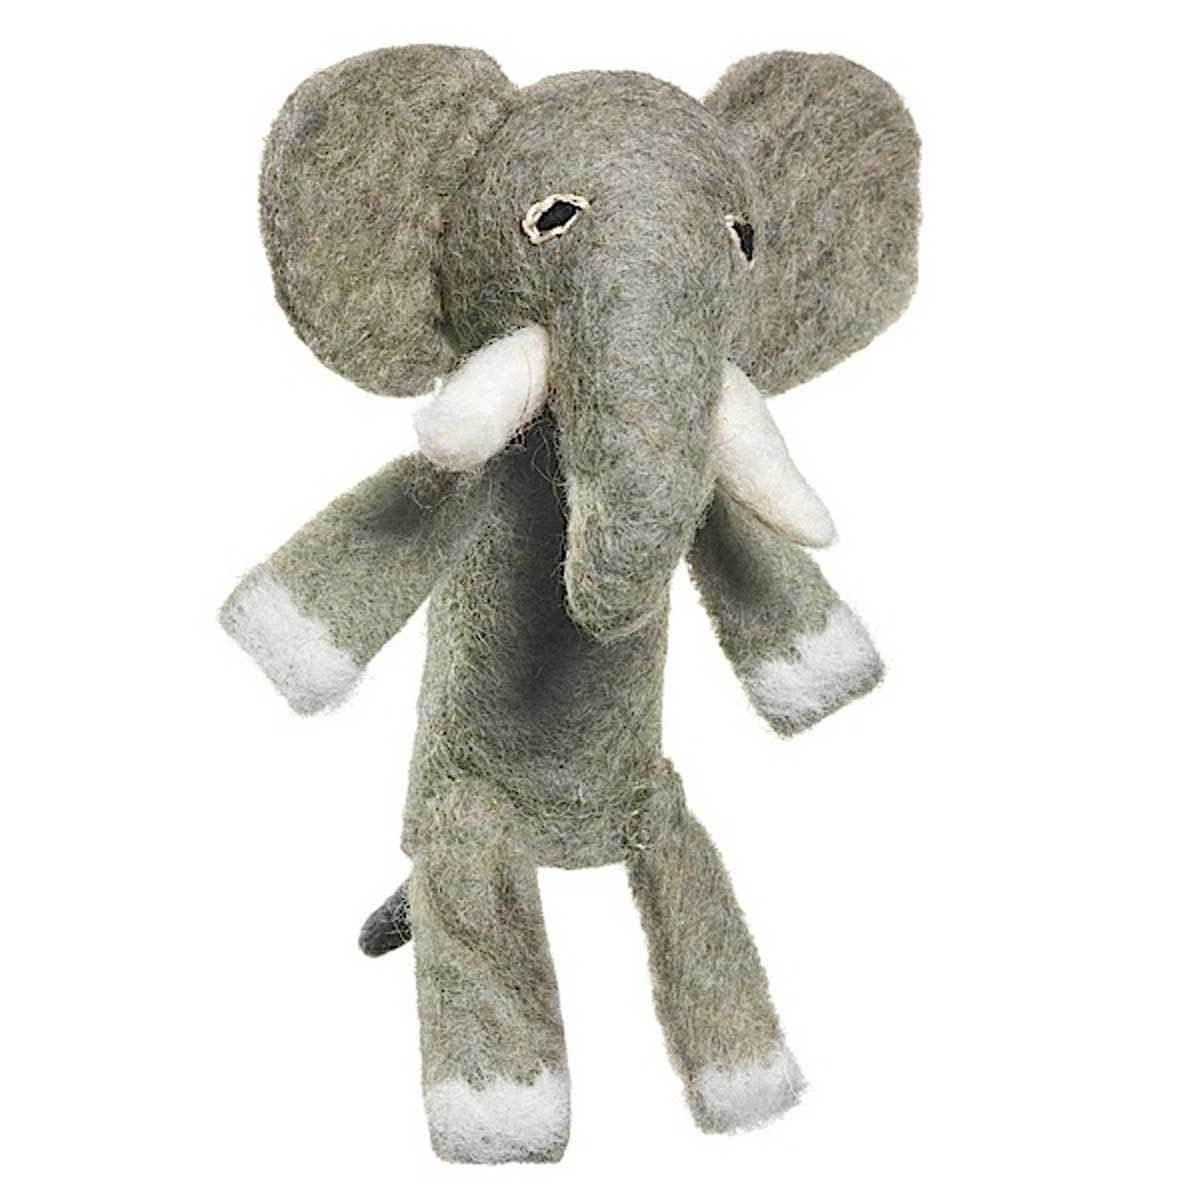 Wild Woolies Elephant Woolie Finger Puppet
Jungle Pillows